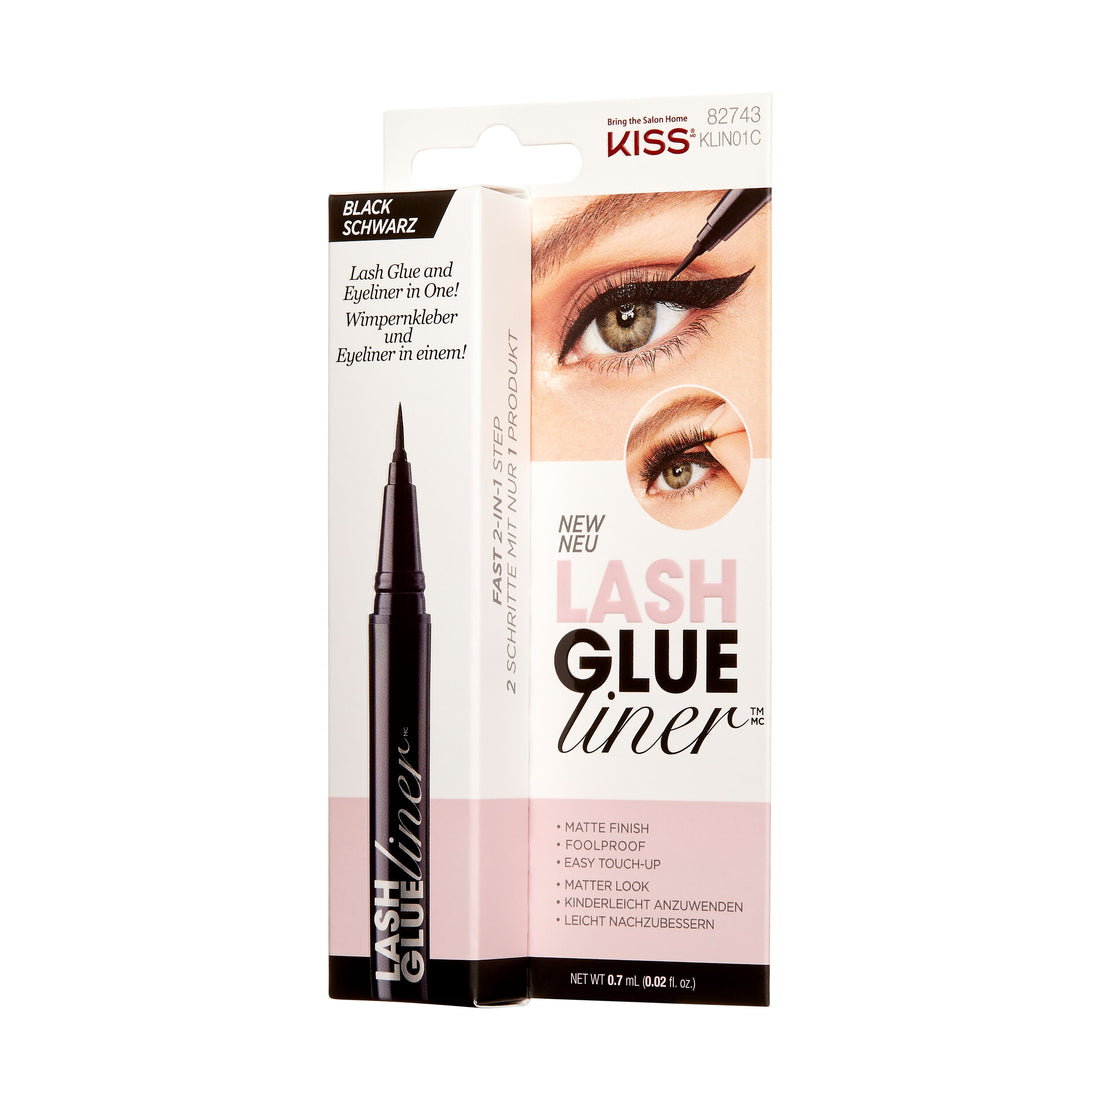 KISS Lash GLUEliner Matte Finish False Eyelash Glue, 0.7 mL (0.02 fl. oz.), Čierna